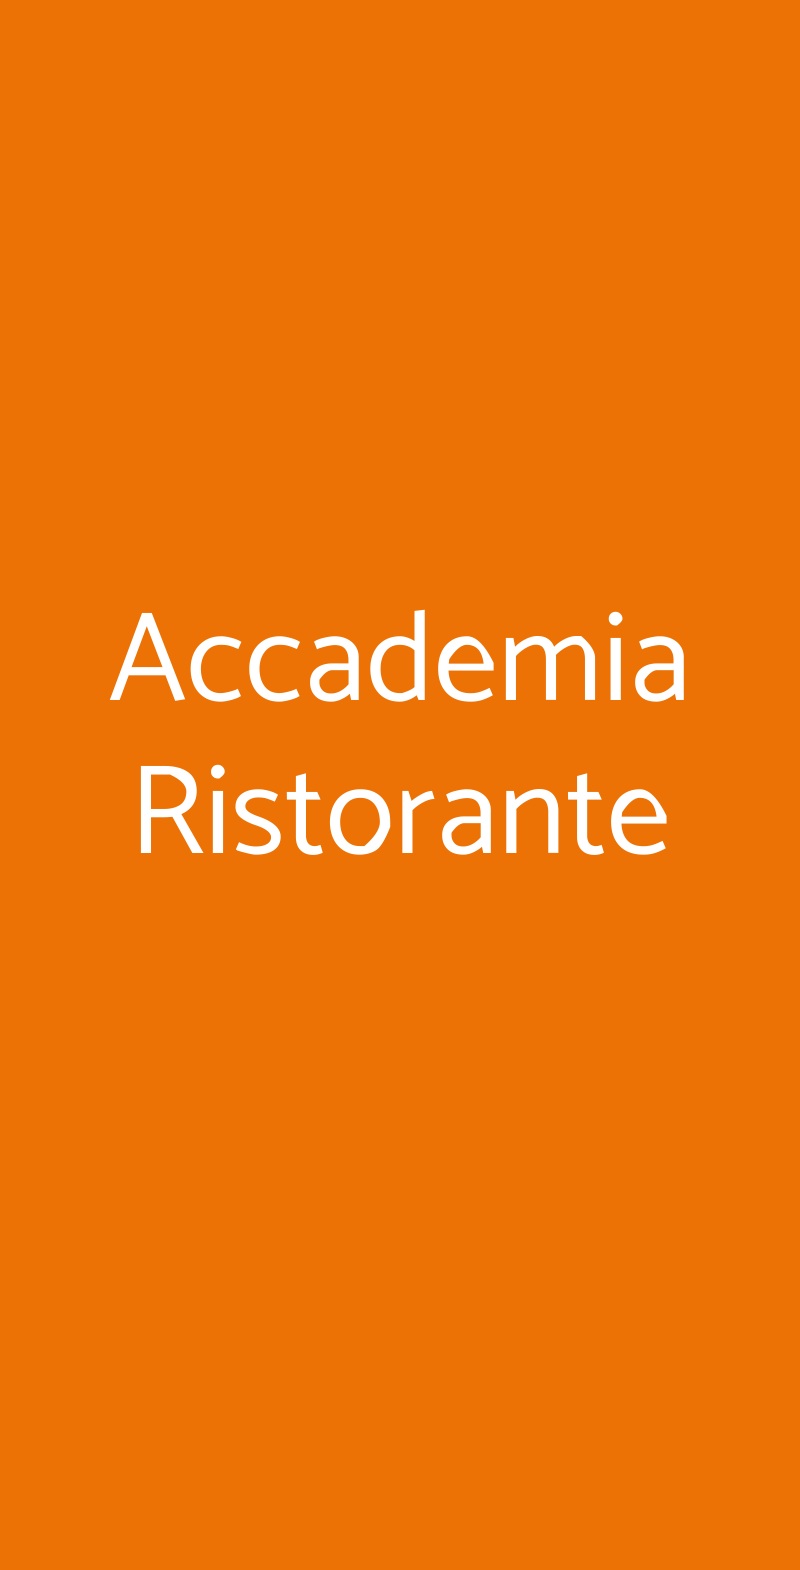 Accademia Ristorante Casale Monferrato menù 1 pagina